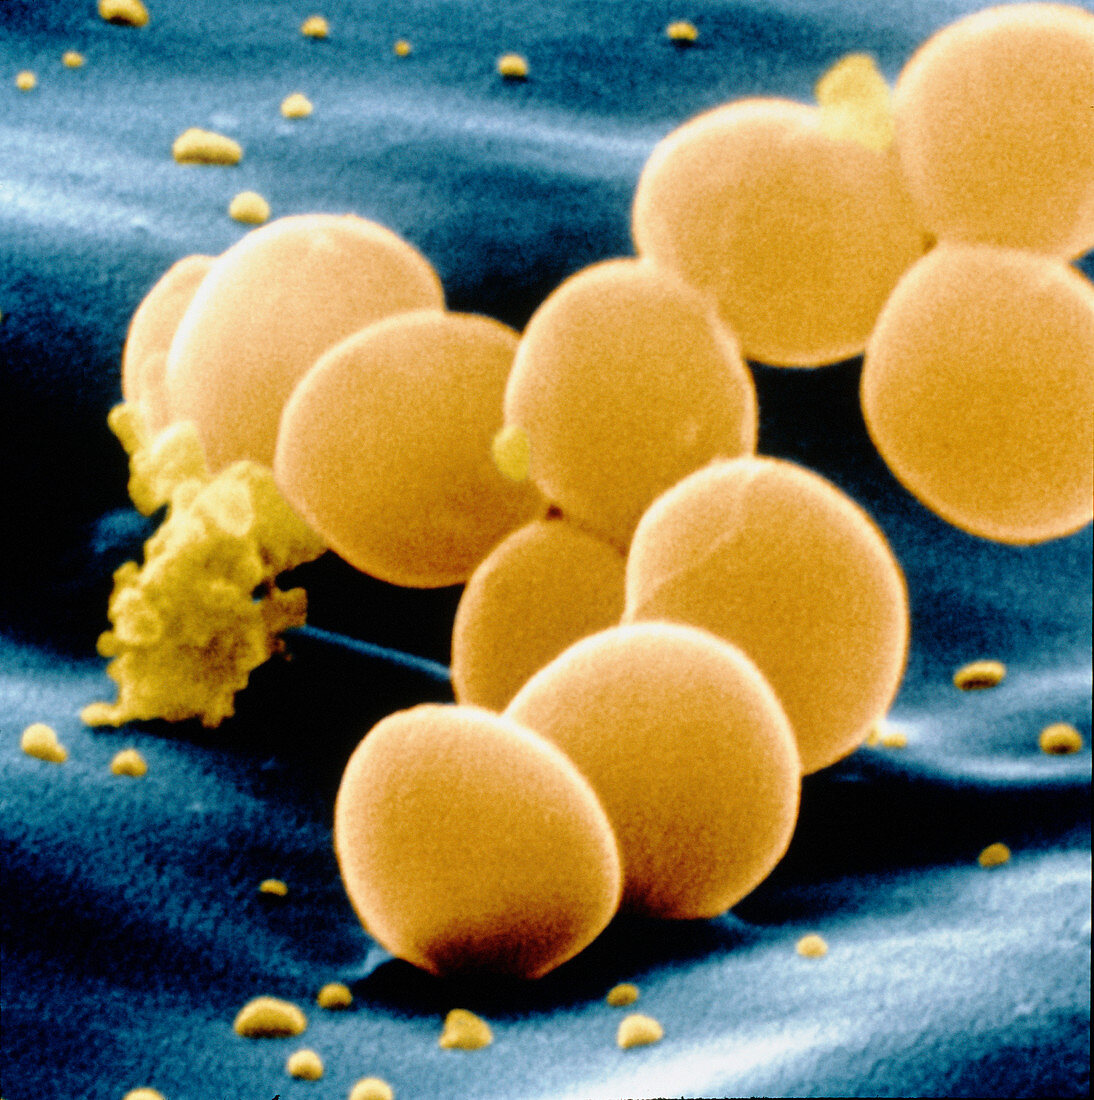 SEM of staphylococcus aureus bacteria